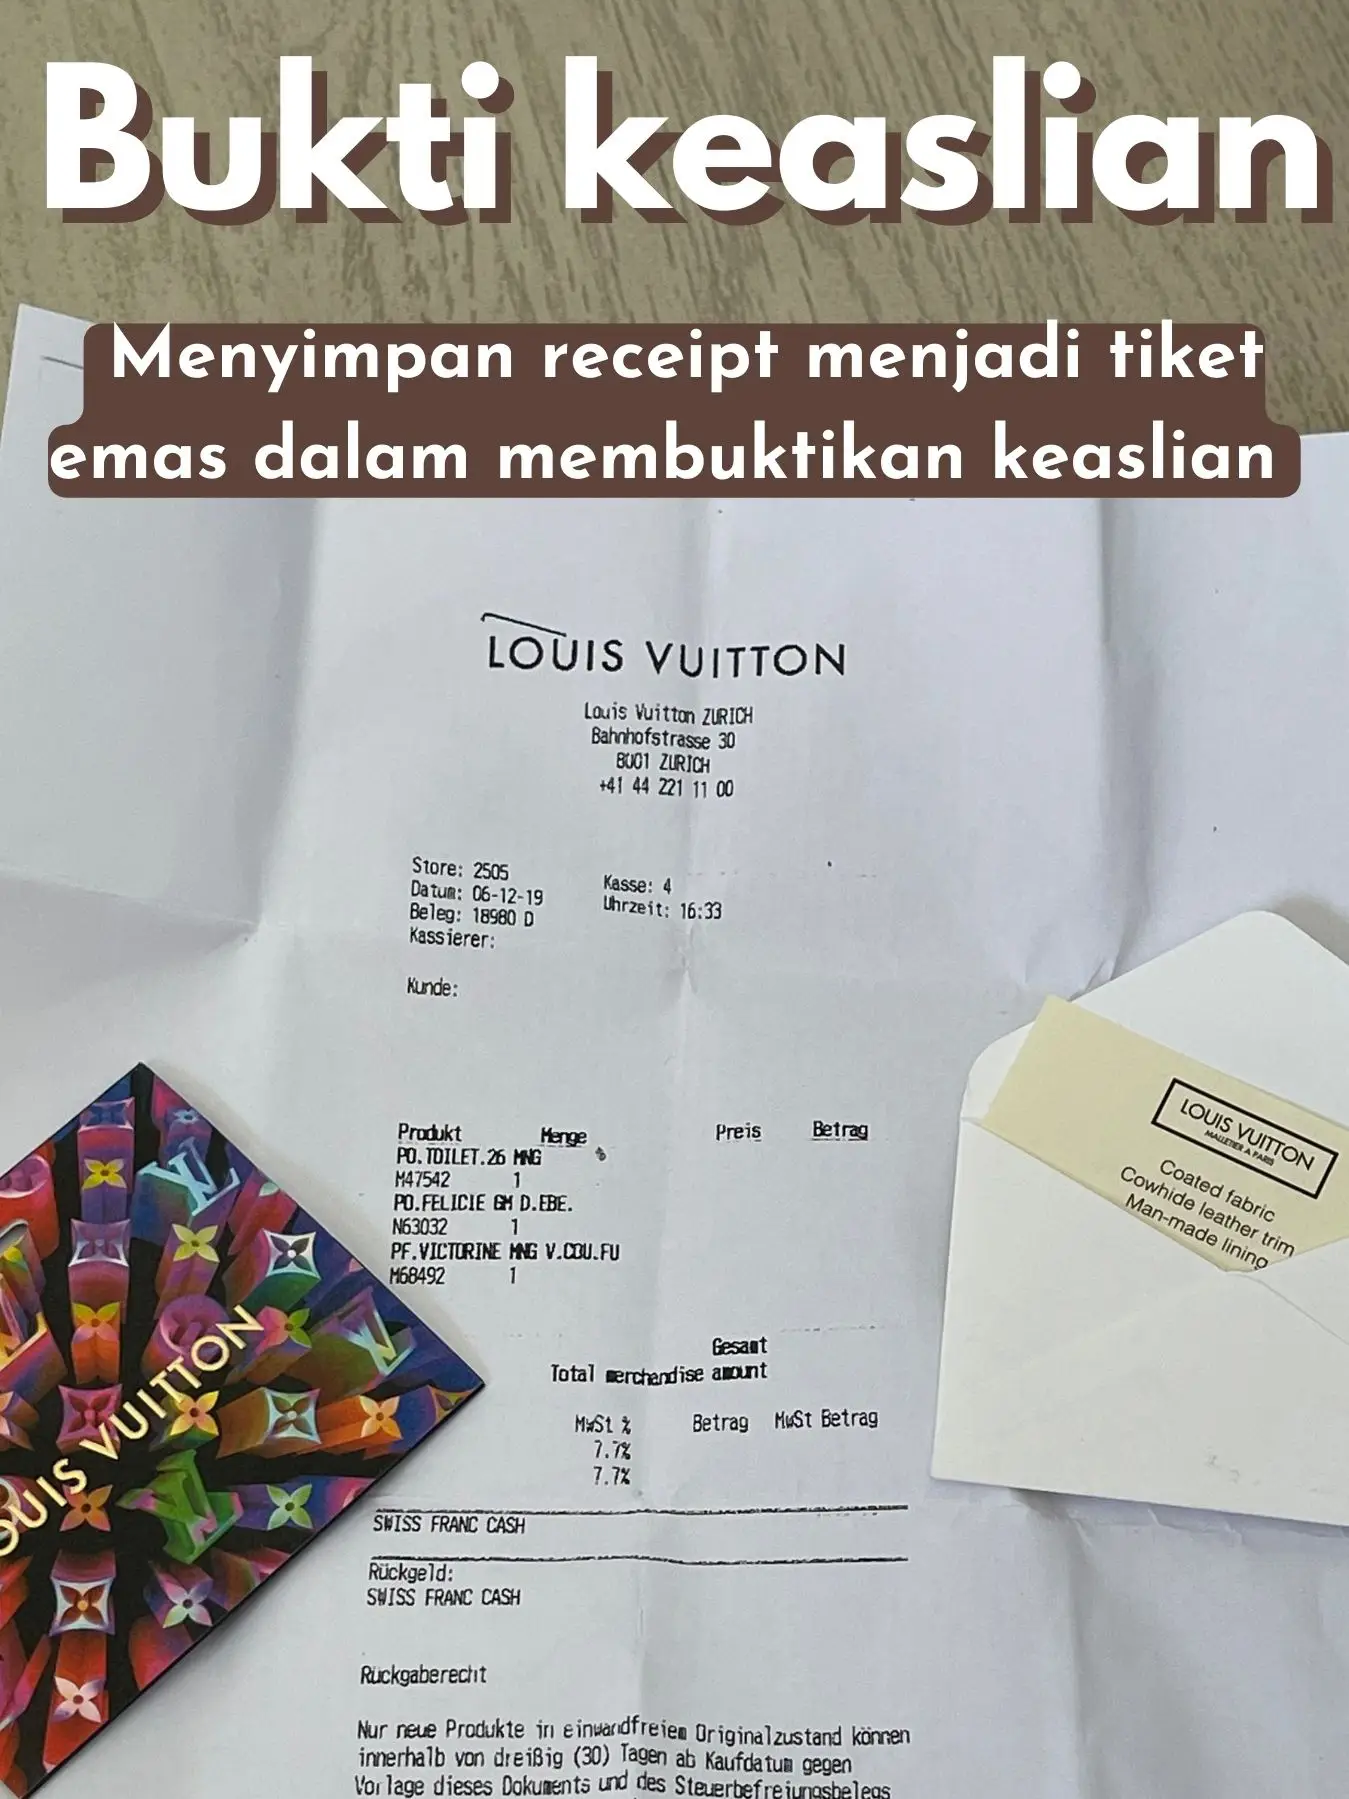 Harus simpan receipt tas luxury items, Gallery posted by Angellica N